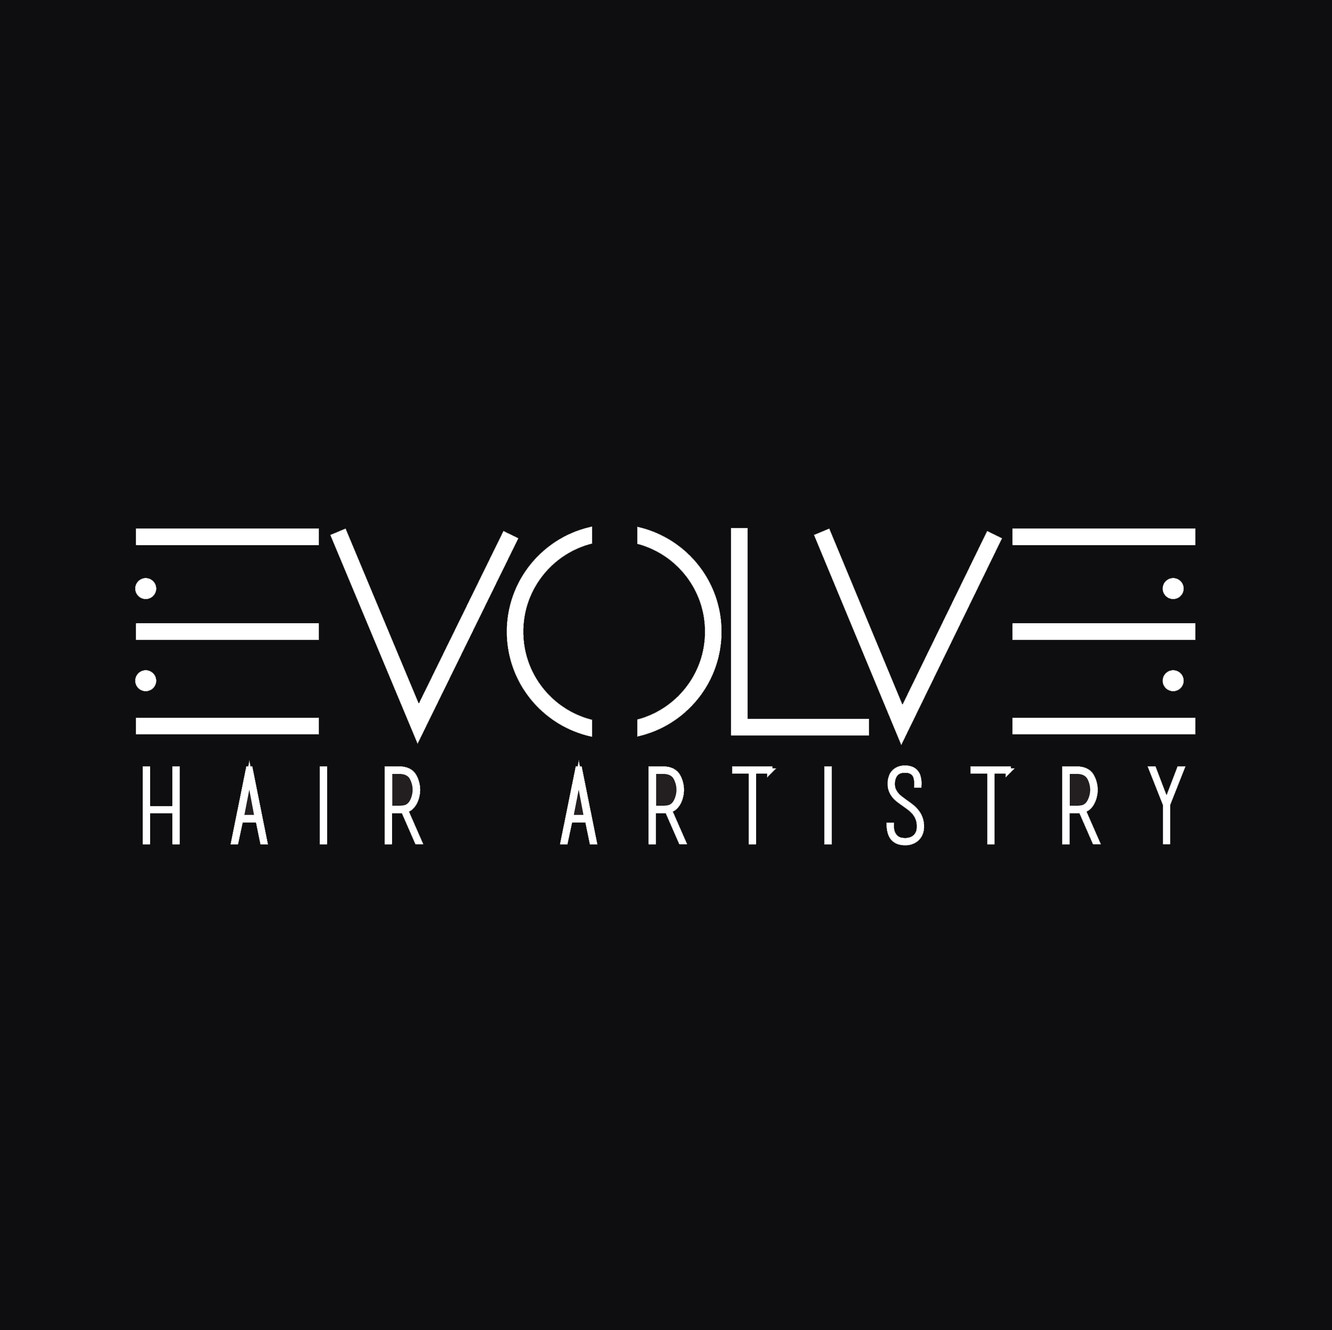 Evolve Hair